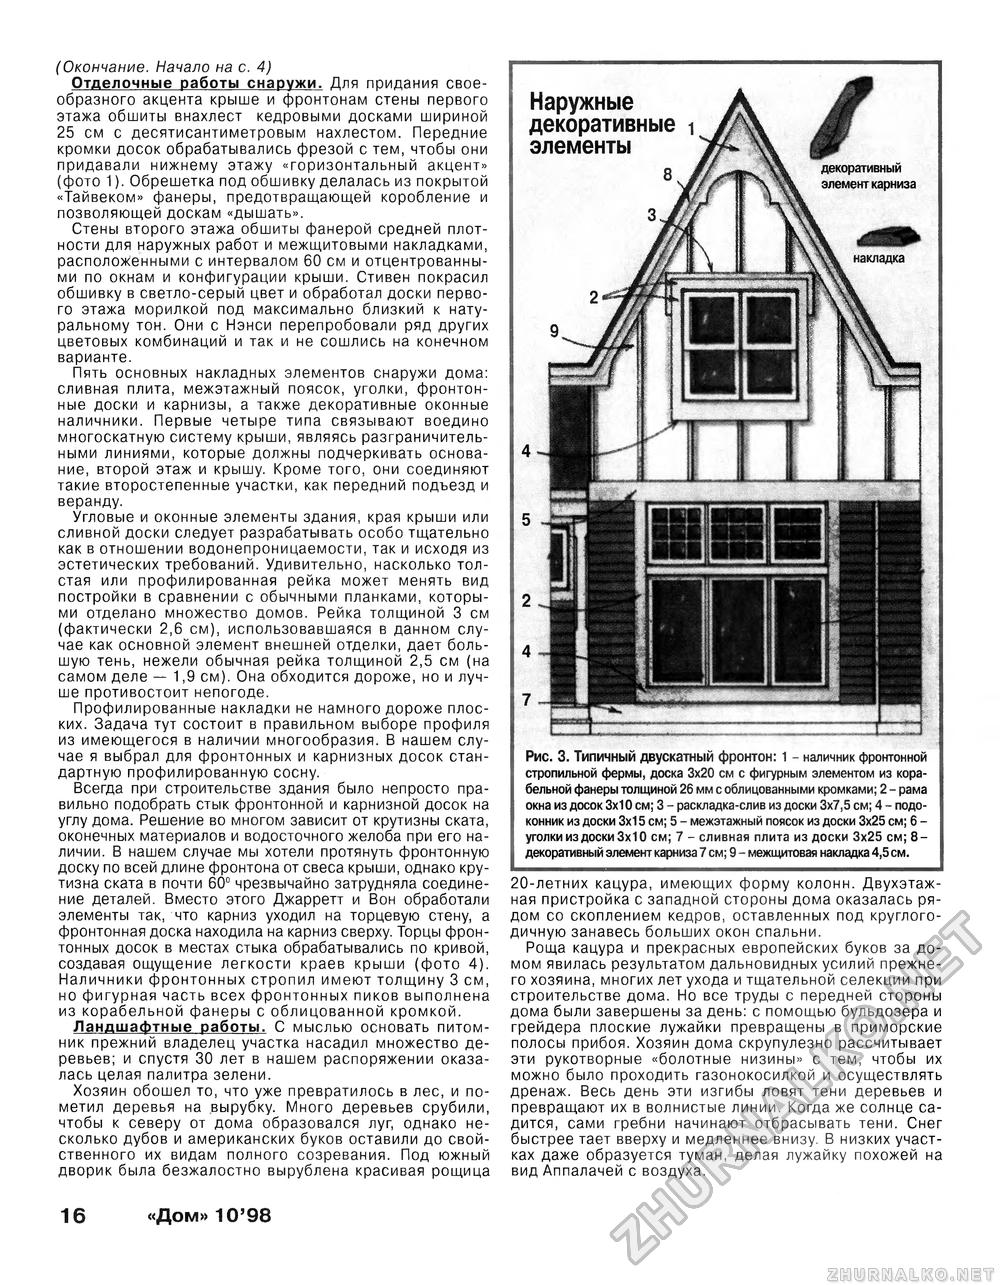 Дом 1998-10, страница 16